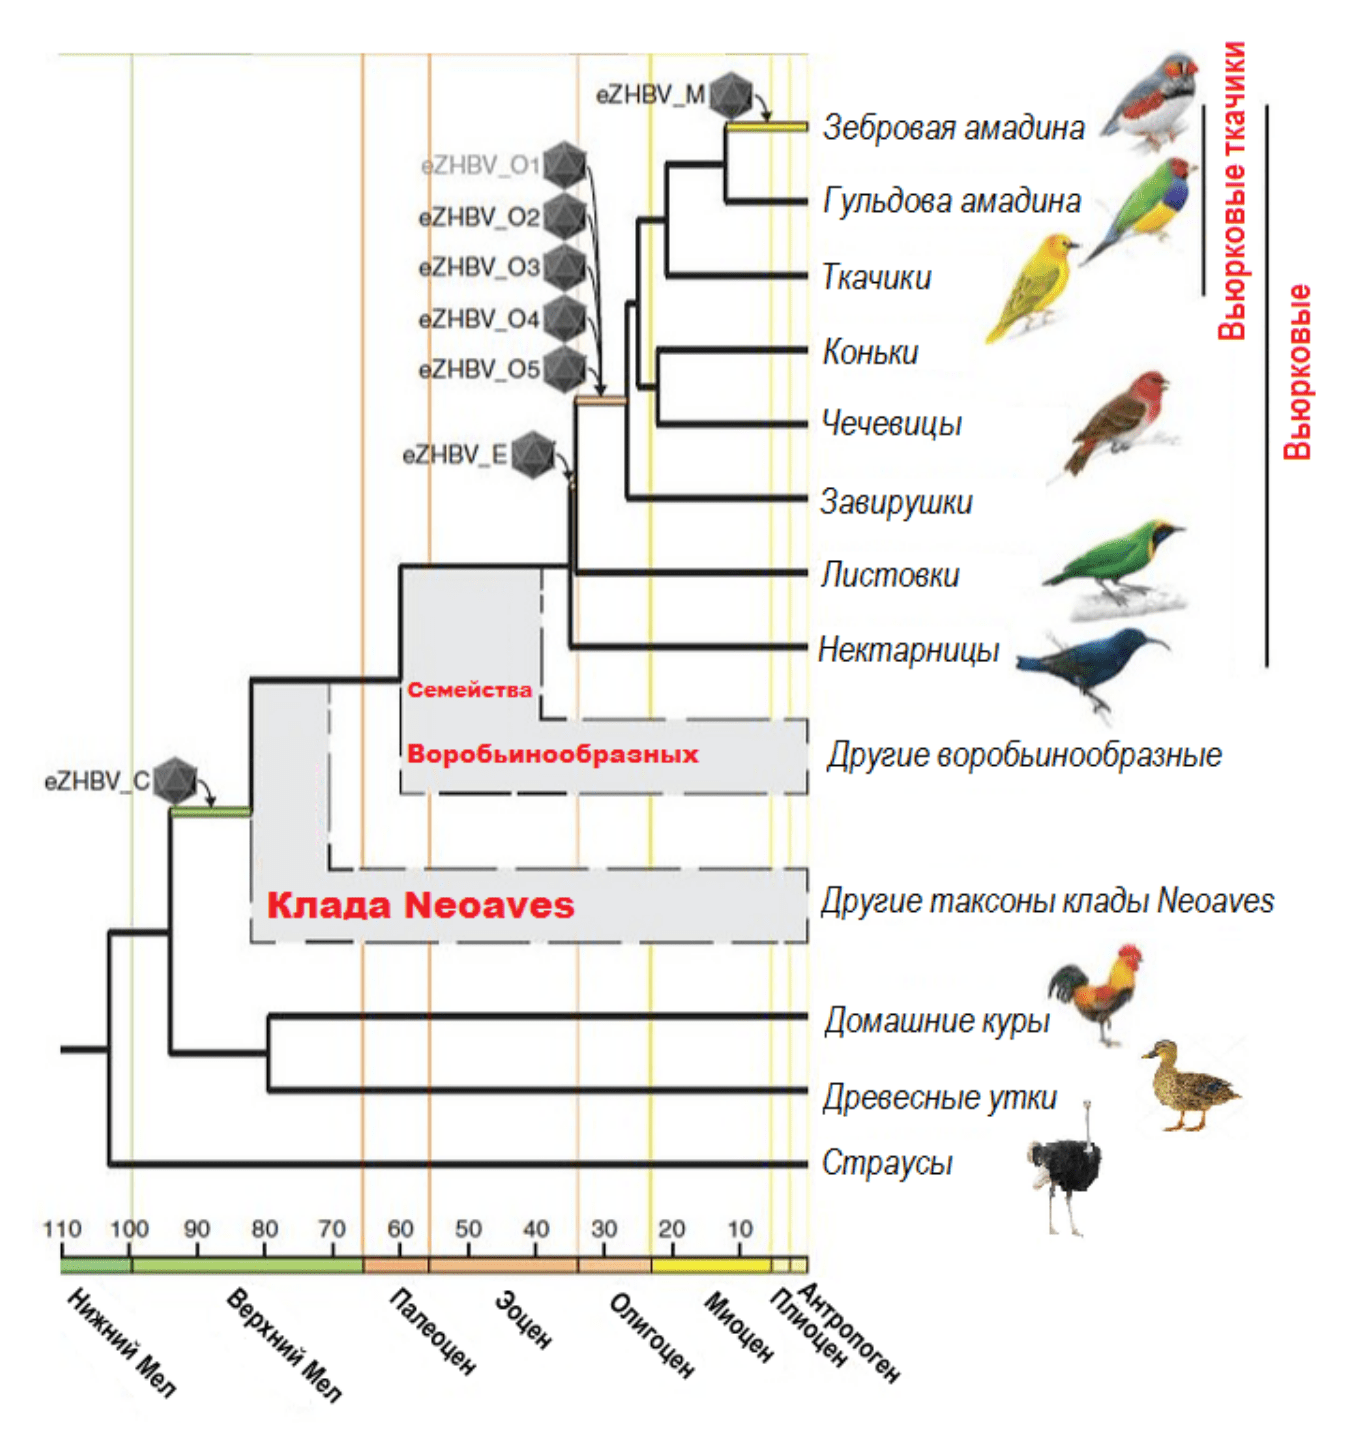 Эндогенизация вируса гепатита В в эволюции птиц